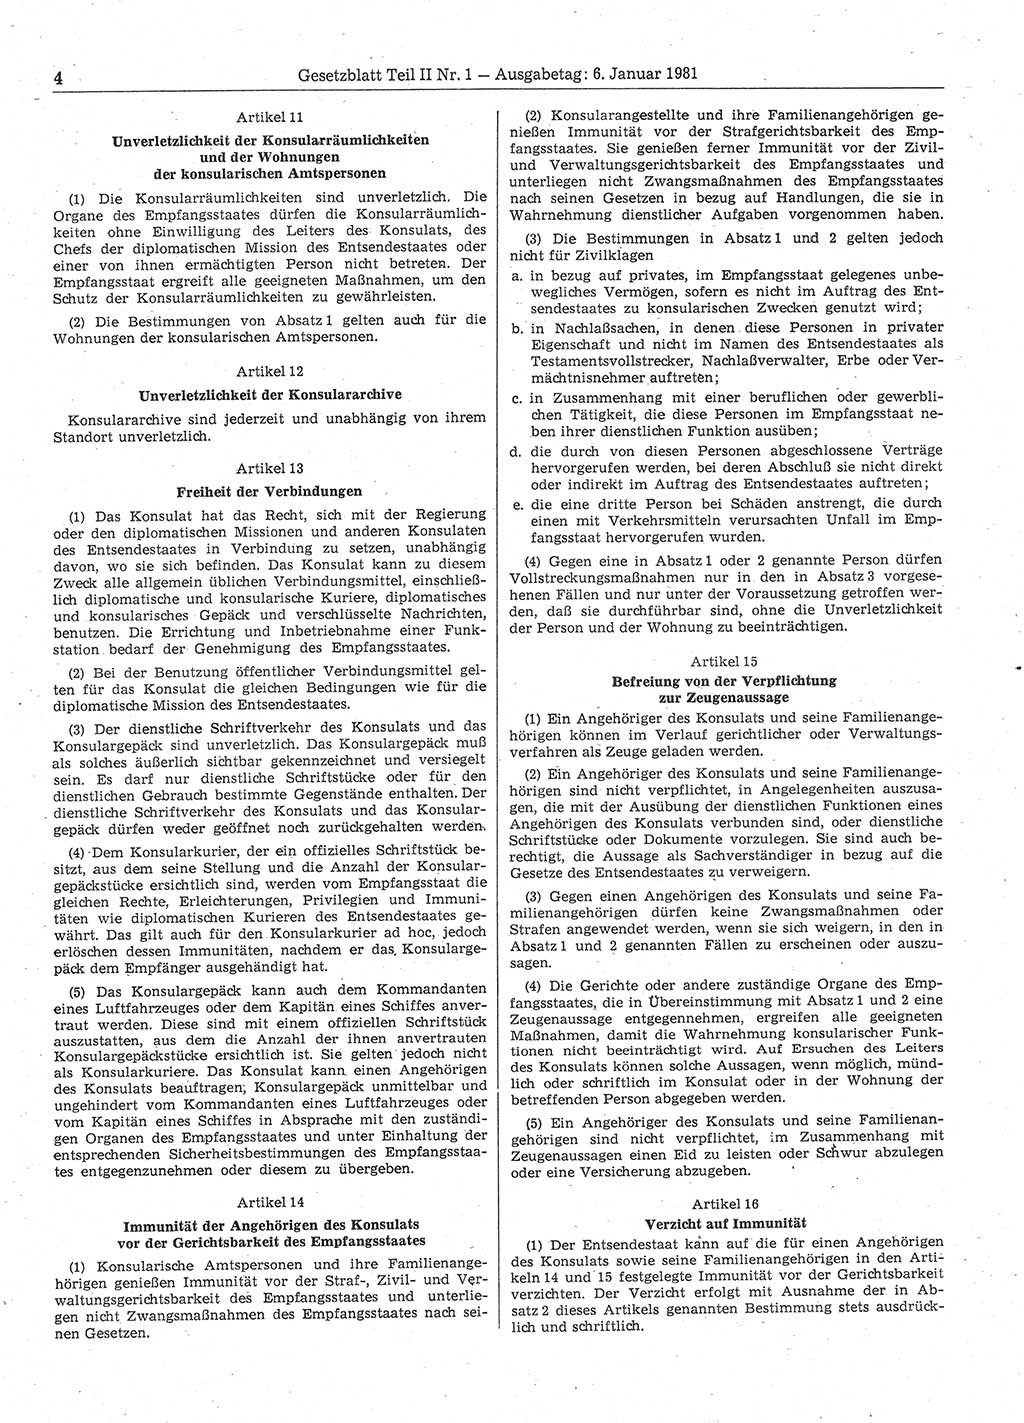 Gesetzblatt (GBl.) der Deutschen Demokratischen Republik (DDR) Teil ⅠⅠ 1981, Seite 4 (GBl. DDR ⅠⅠ 1981, S. 4)